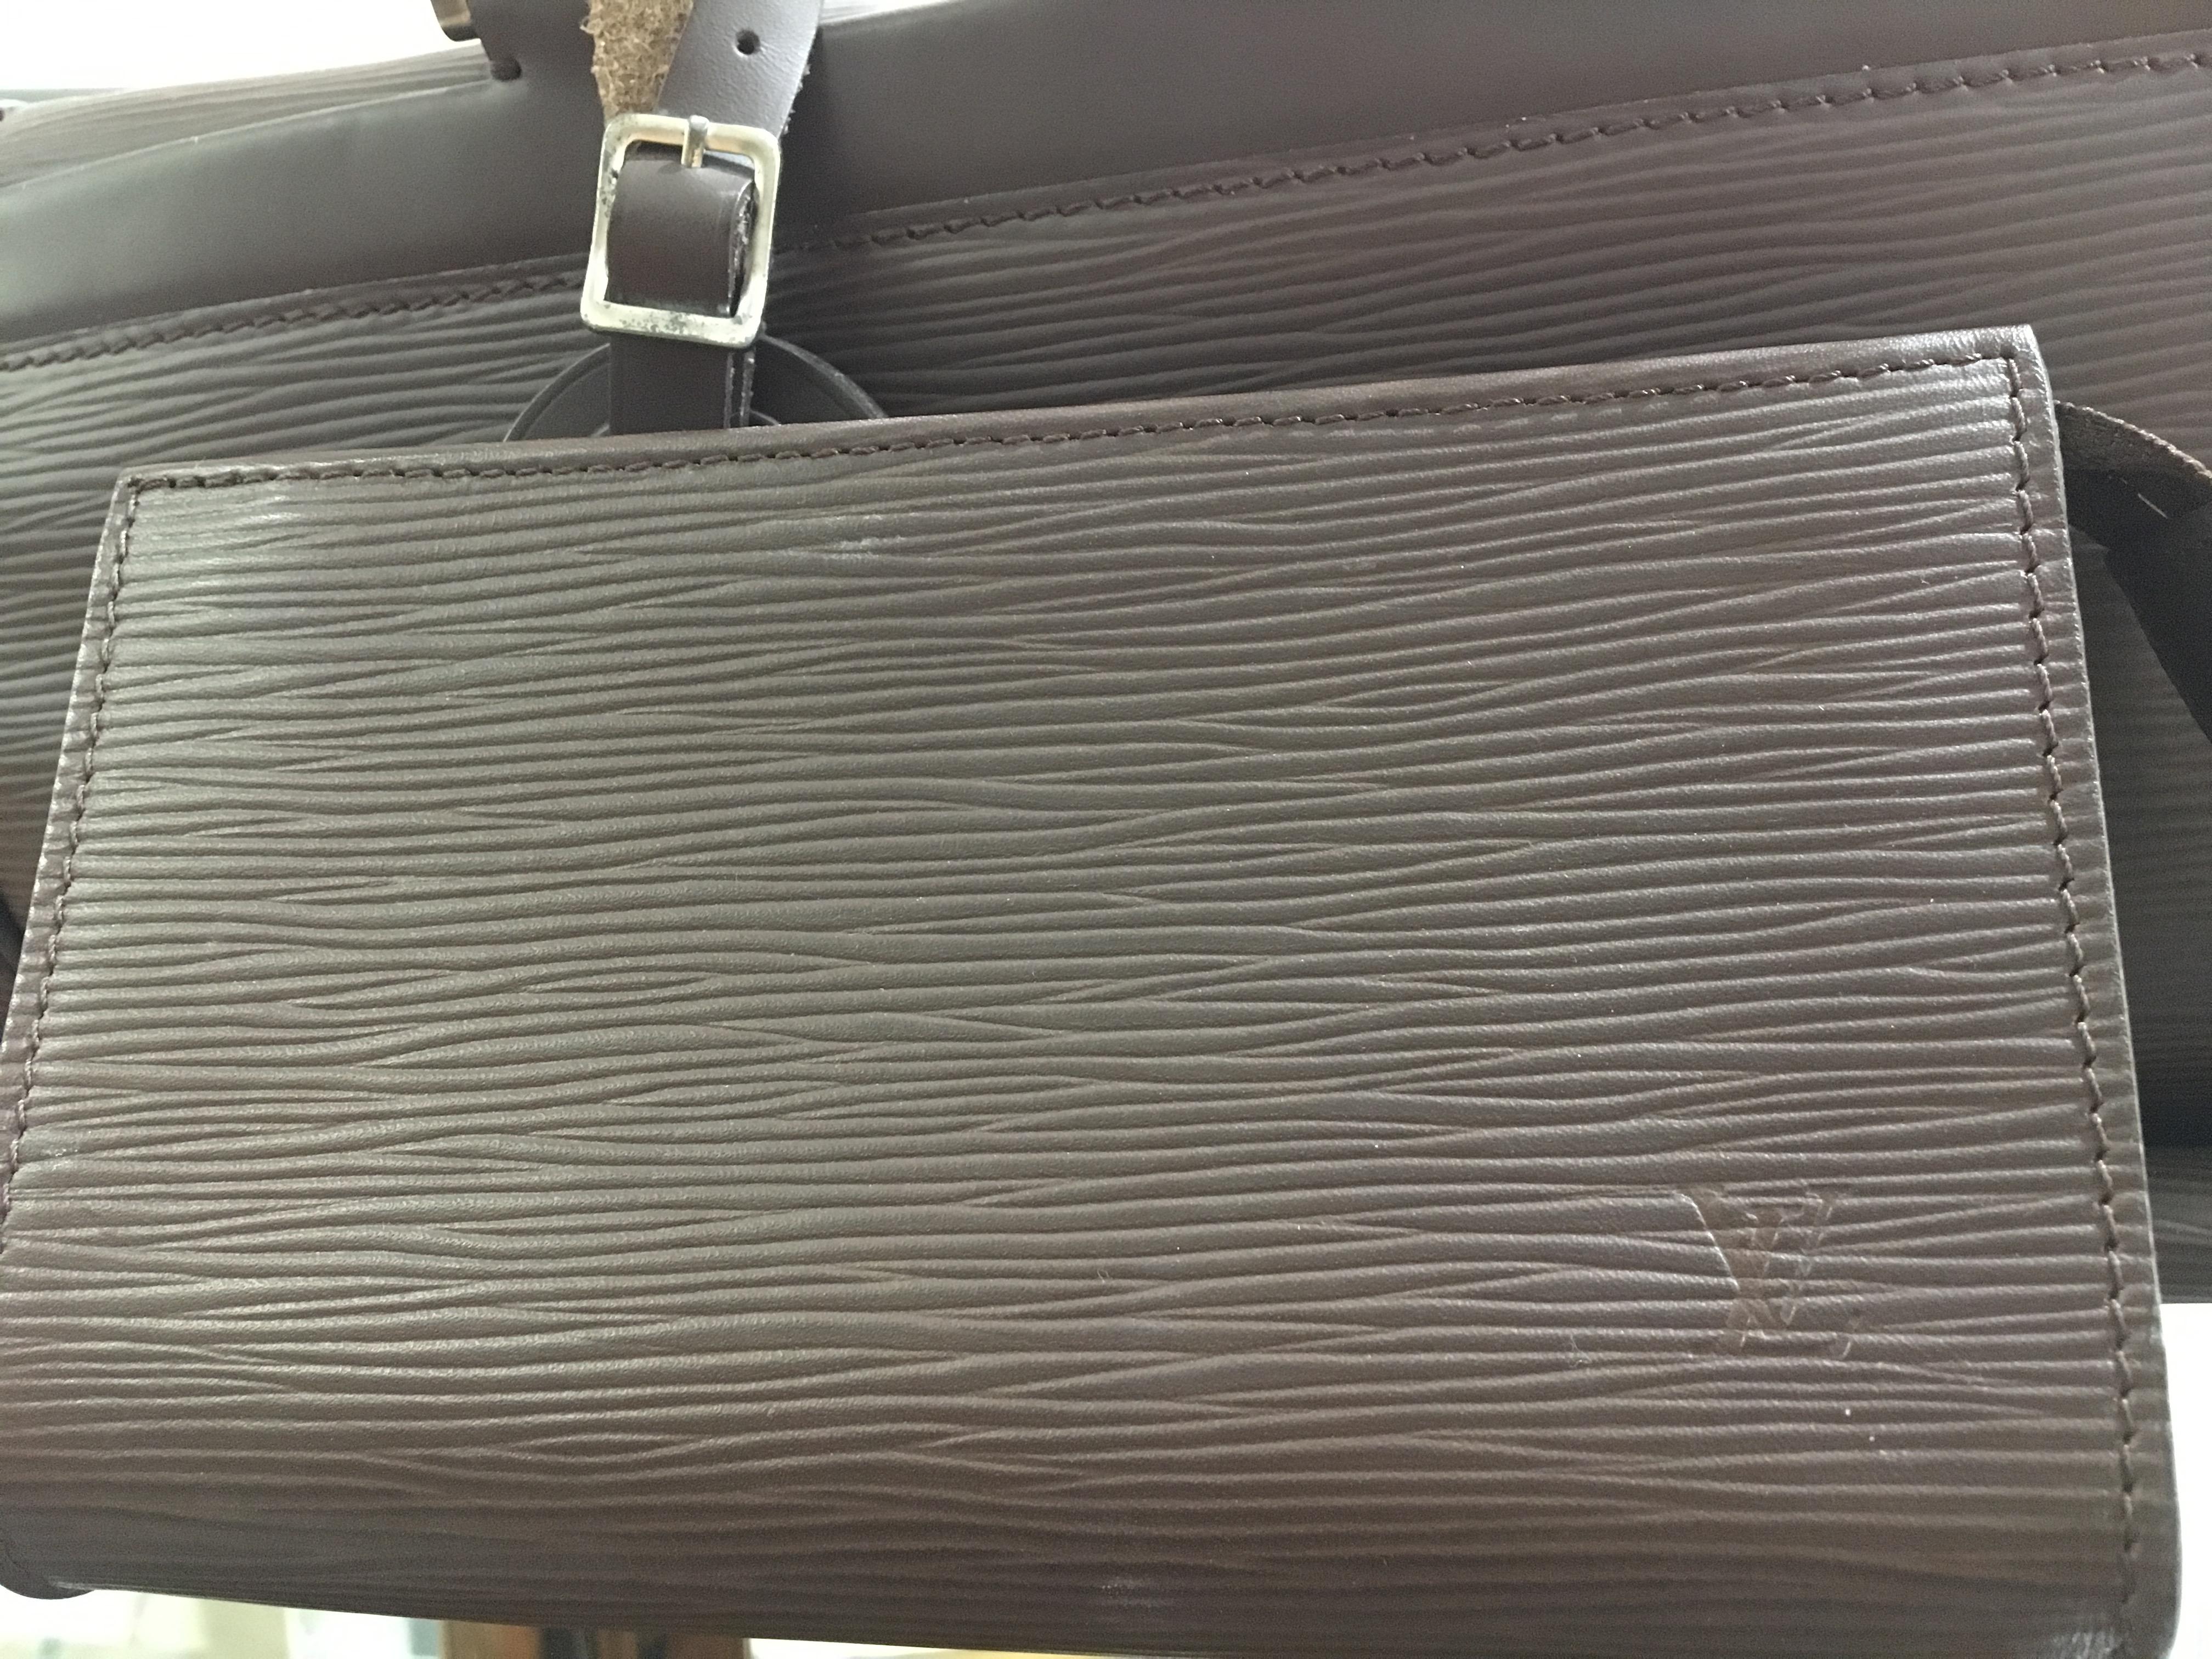 Louis Vuitton Yoga Leather Bag in excellent condition.
Bag Measurements: L 57 cm x H 20 cm with its 145x45 cm Yoga Carpet, and a 17,5x10 cm Purse.